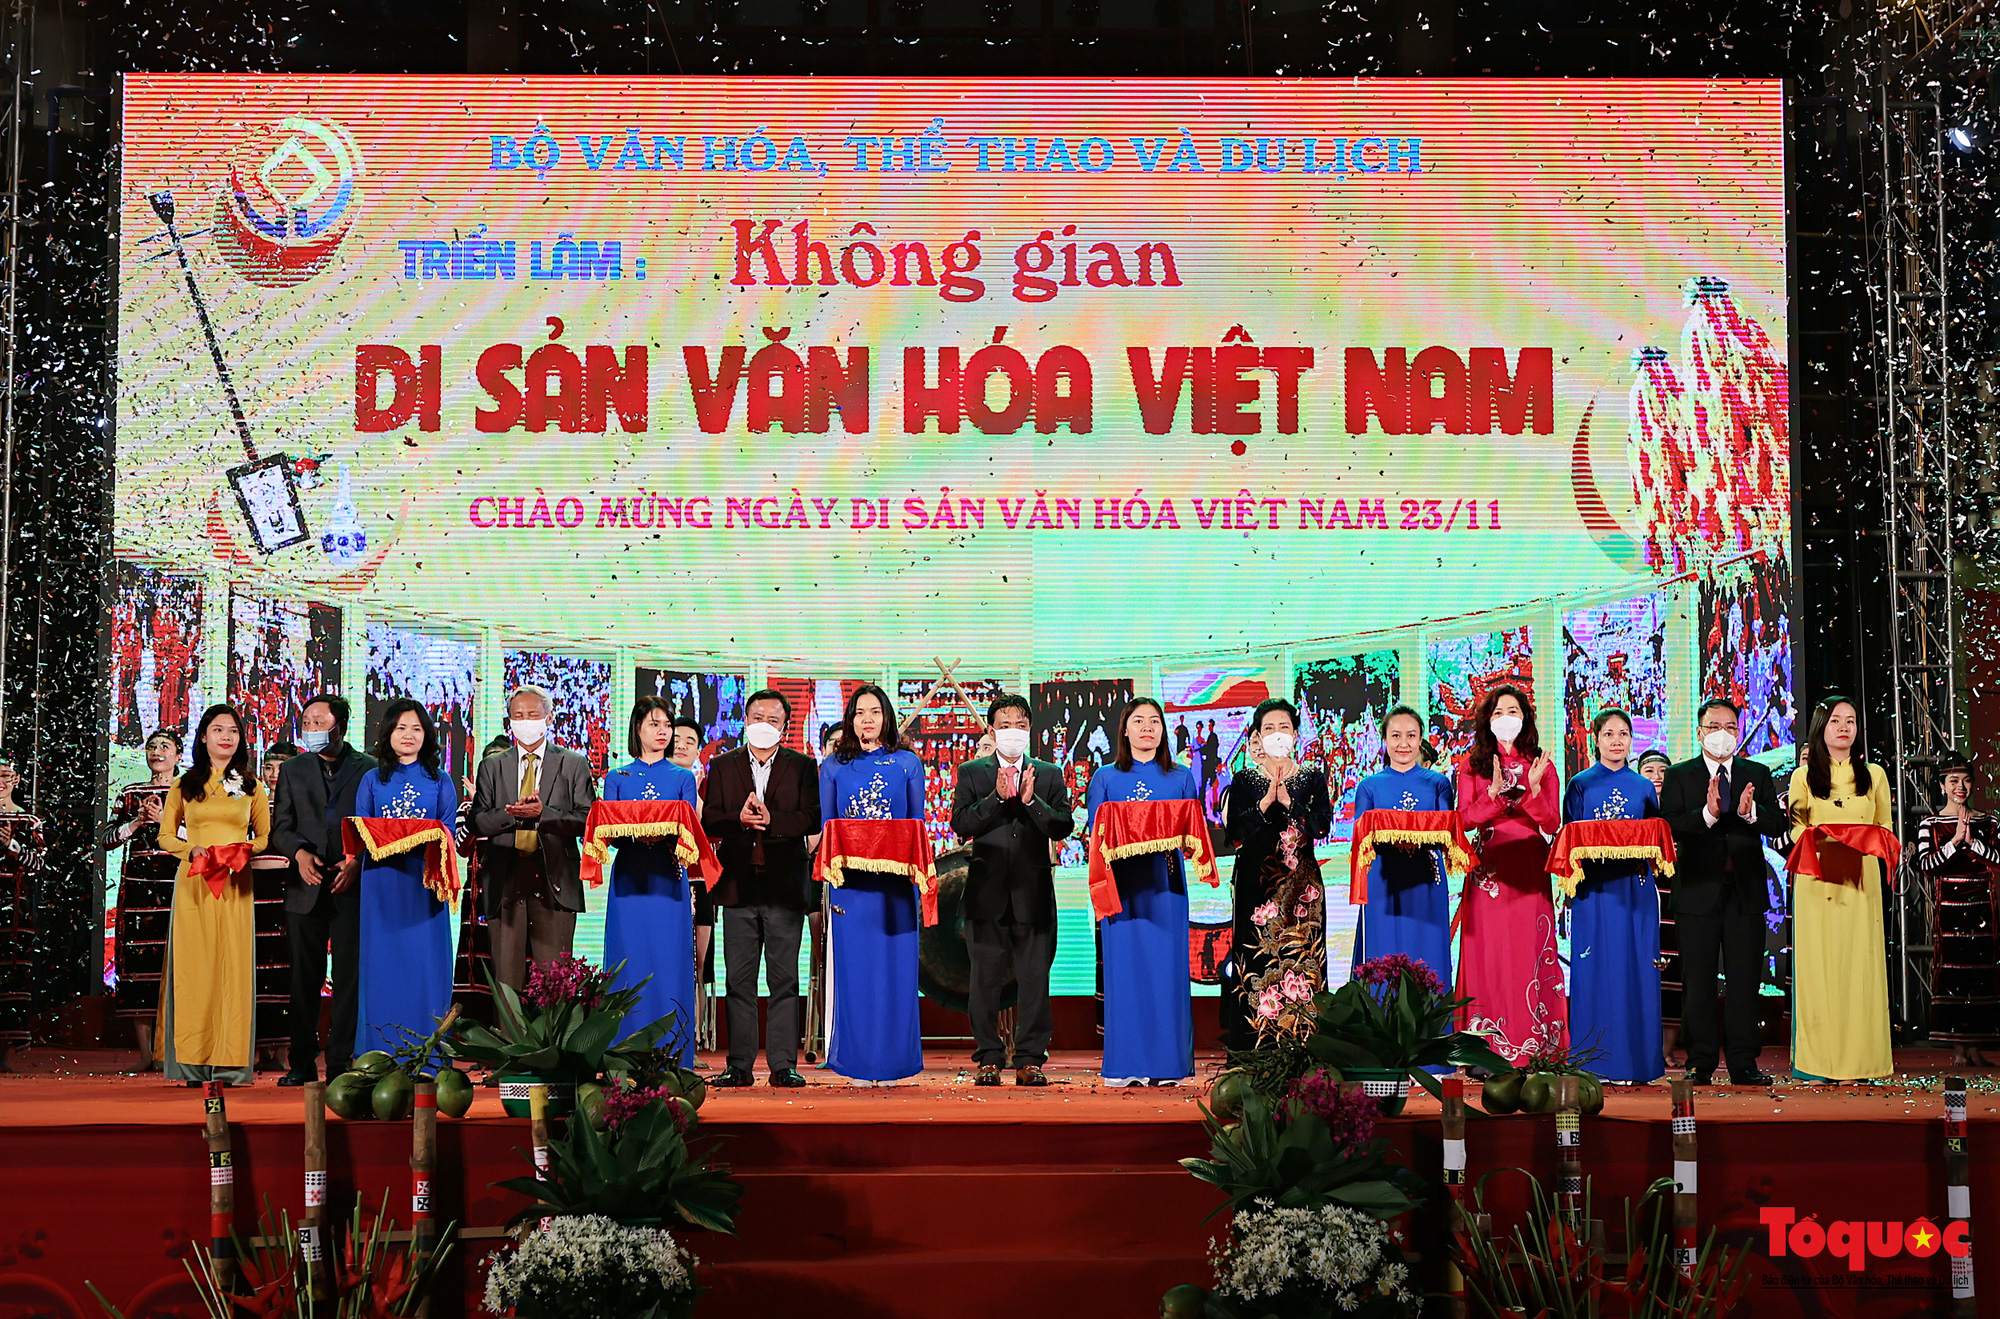 Khai mạc triển lãm “Không gian Di sản văn hóa Việt Nam” tại Hà Nội - Ảnh 1.